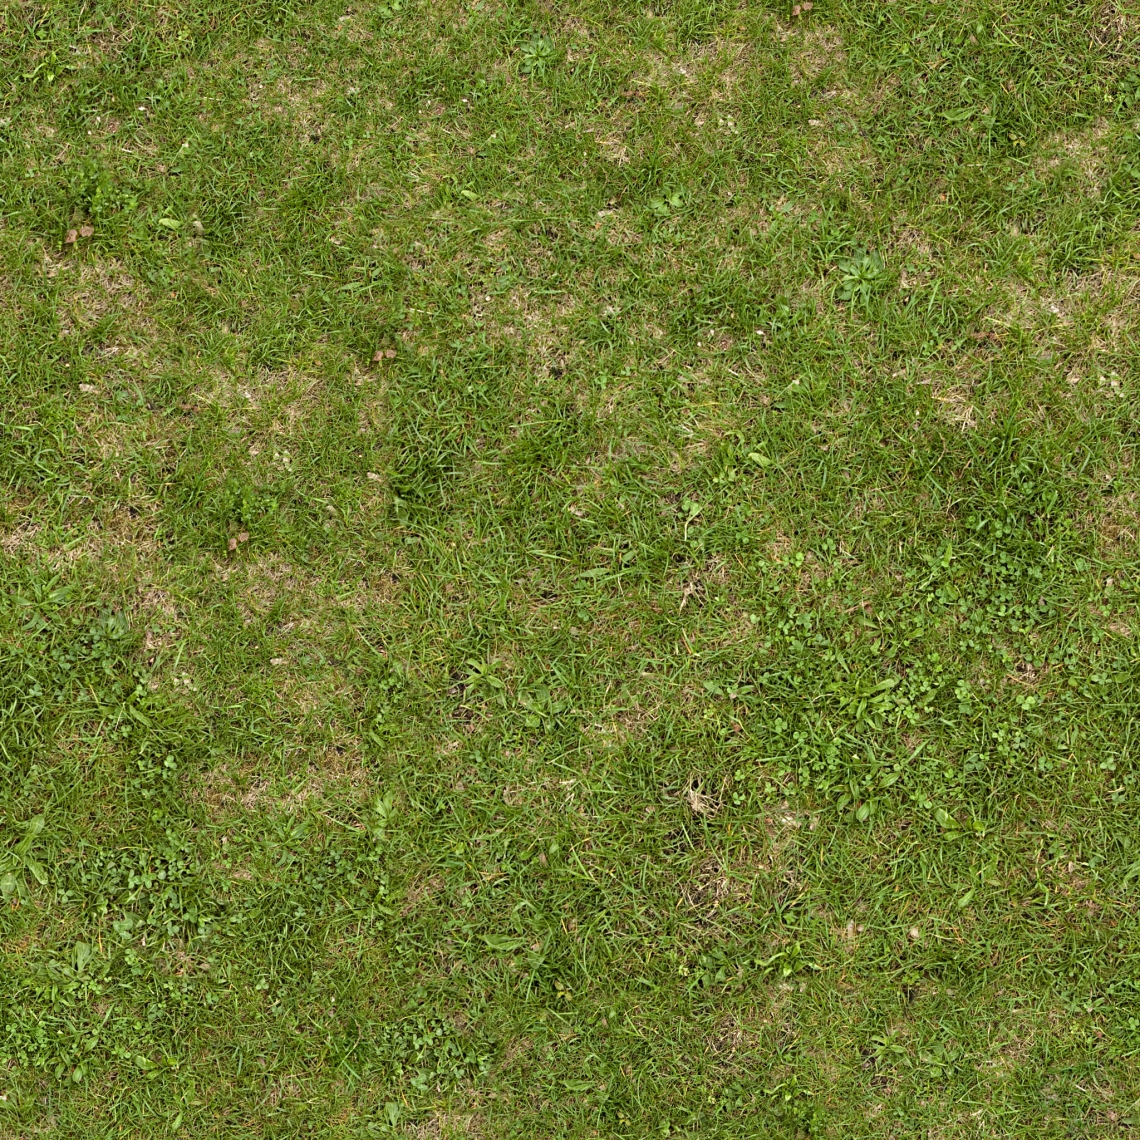 create seamless grass texture